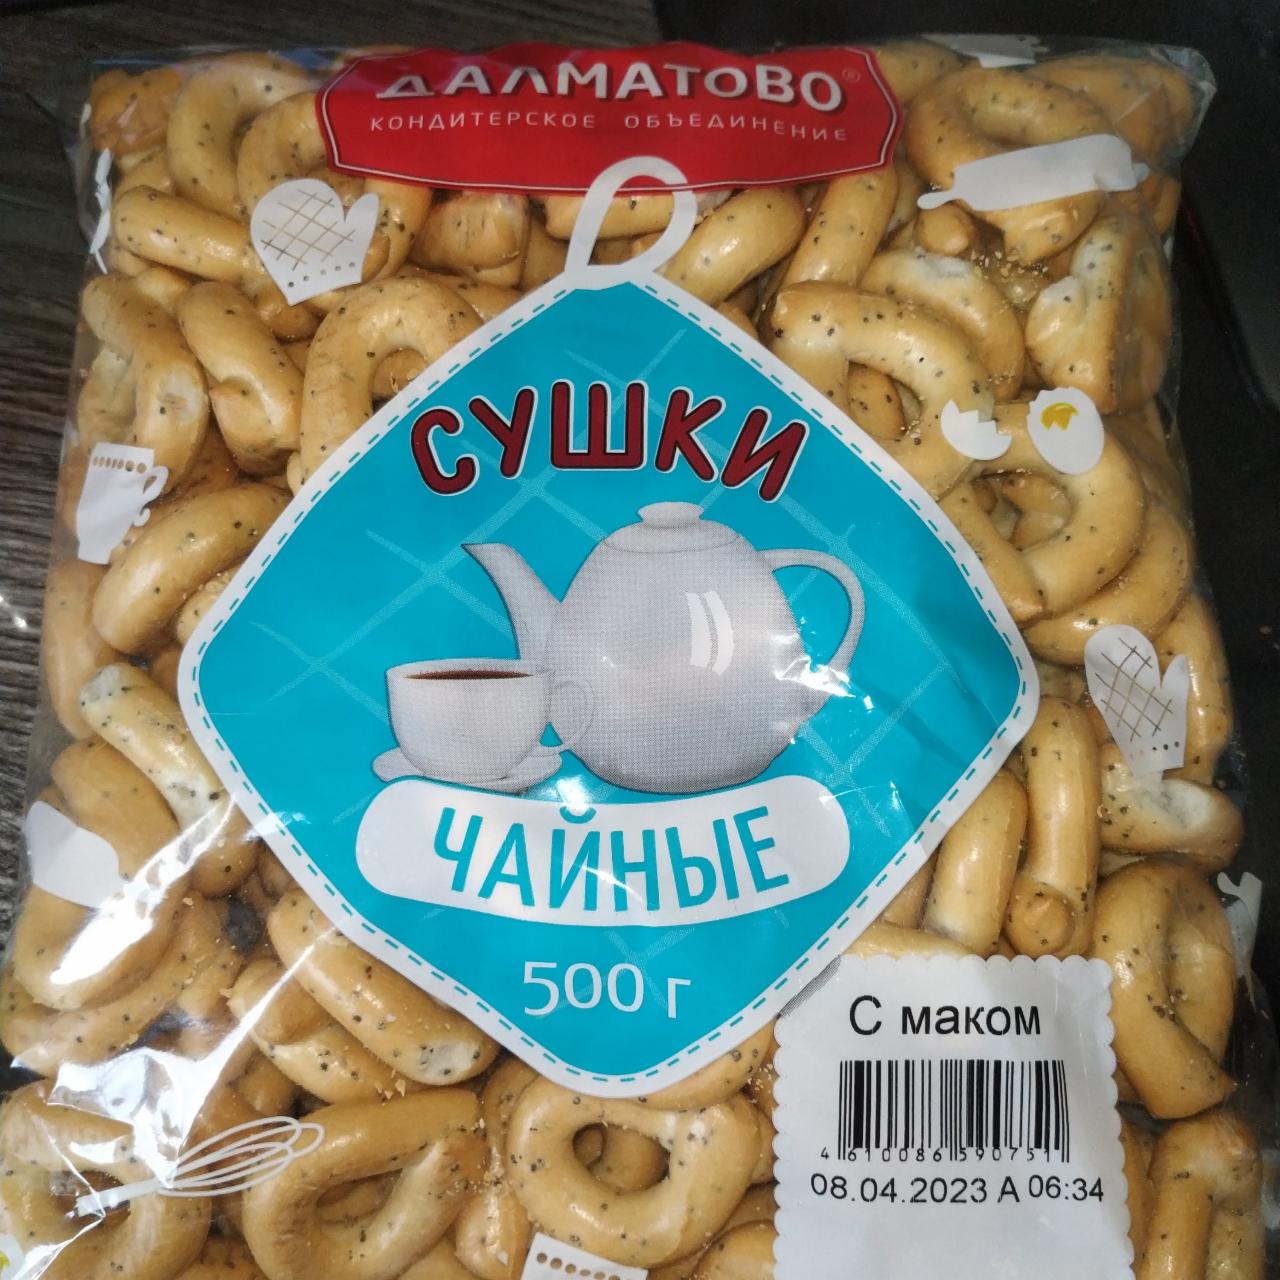 Фото - Сушки чайные с маком Далматово